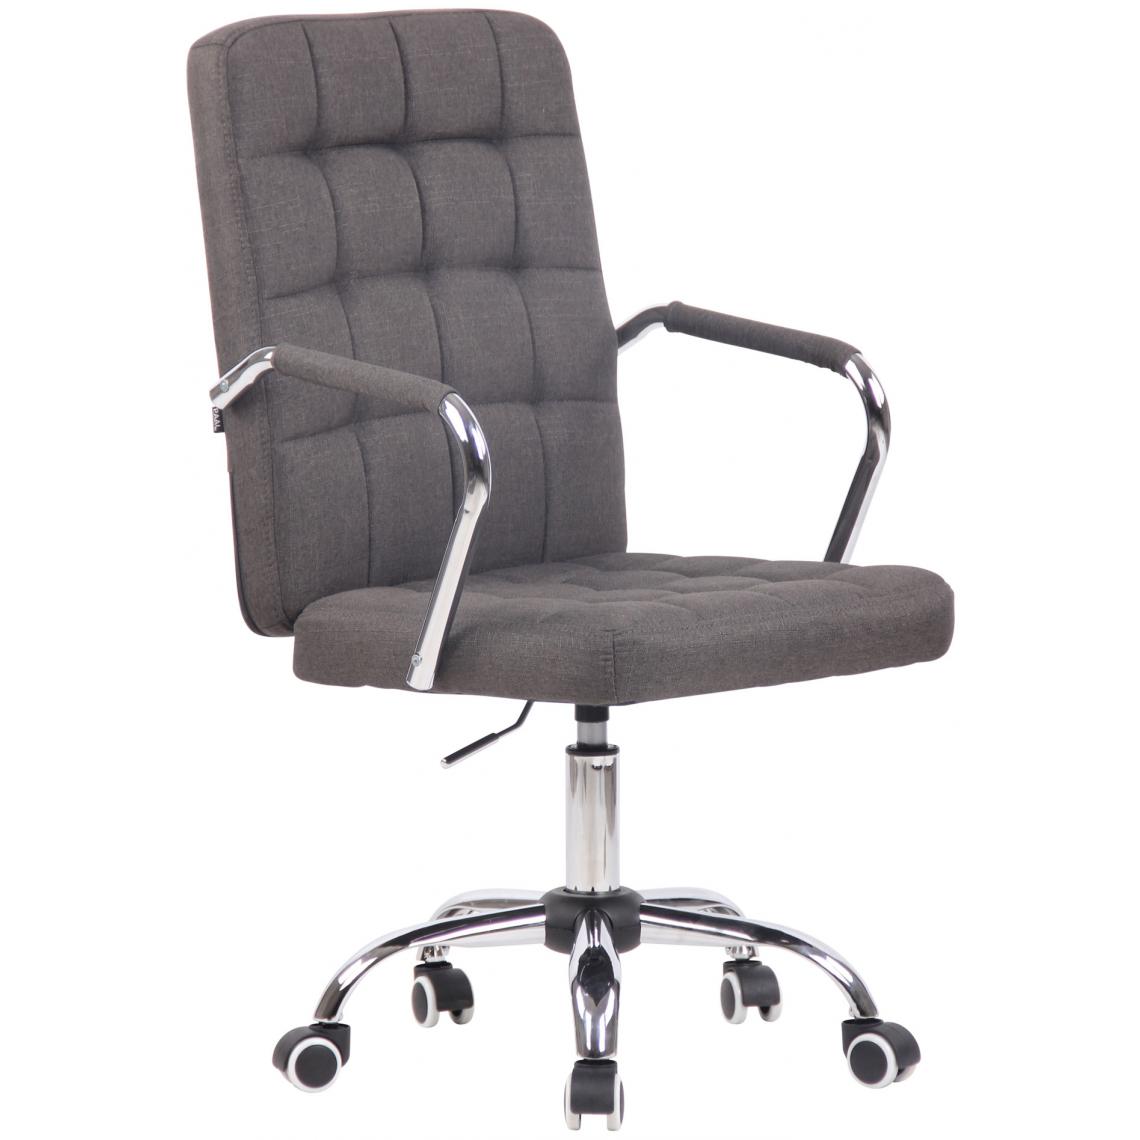 Icaverne - Admirable Chaise de bureau categorie Athènes tissu couleur gris foncé - Chaises